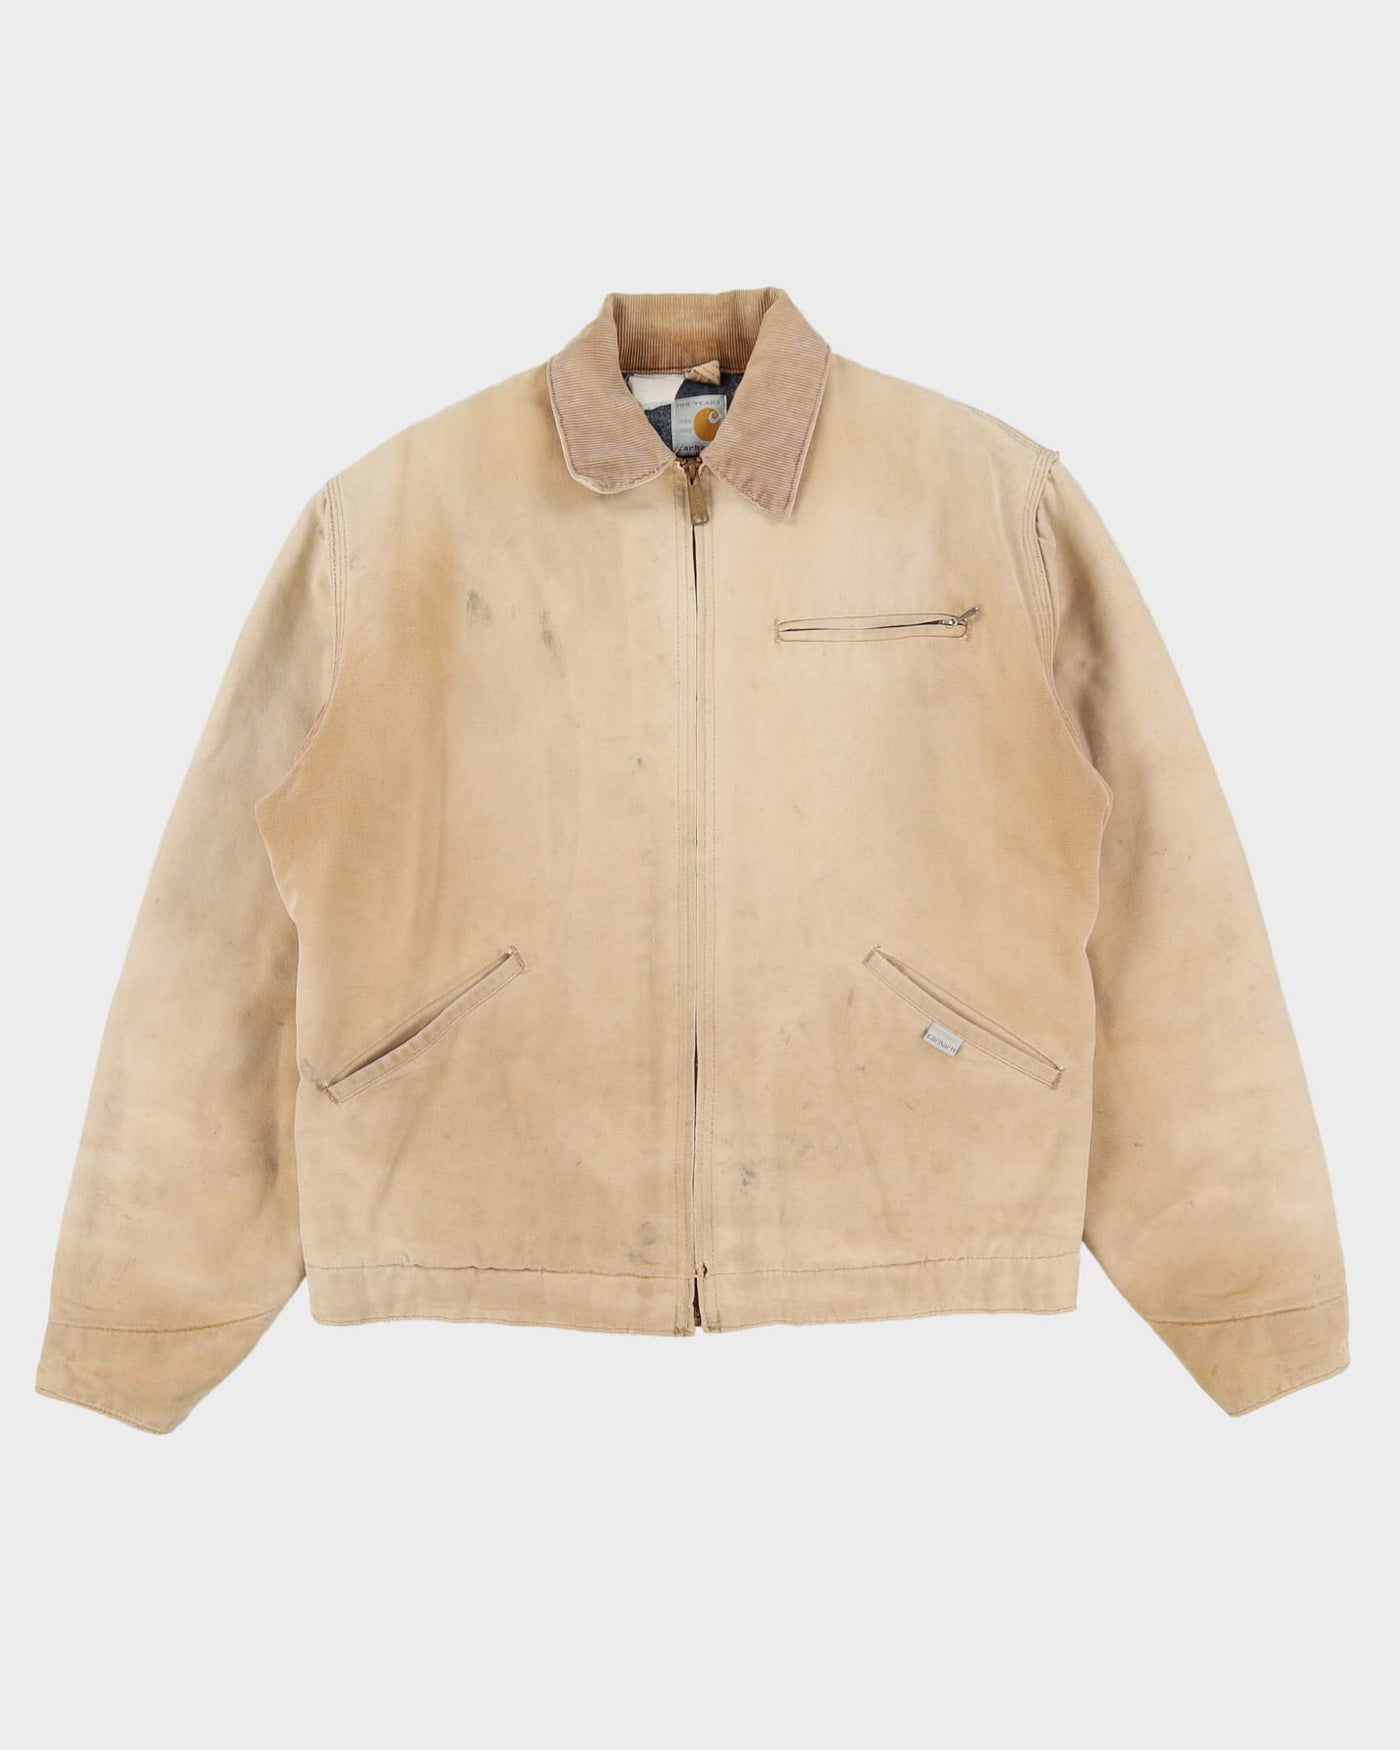 1989 100 Year Anniversary Carhartt Beige Workwear Jacket - M